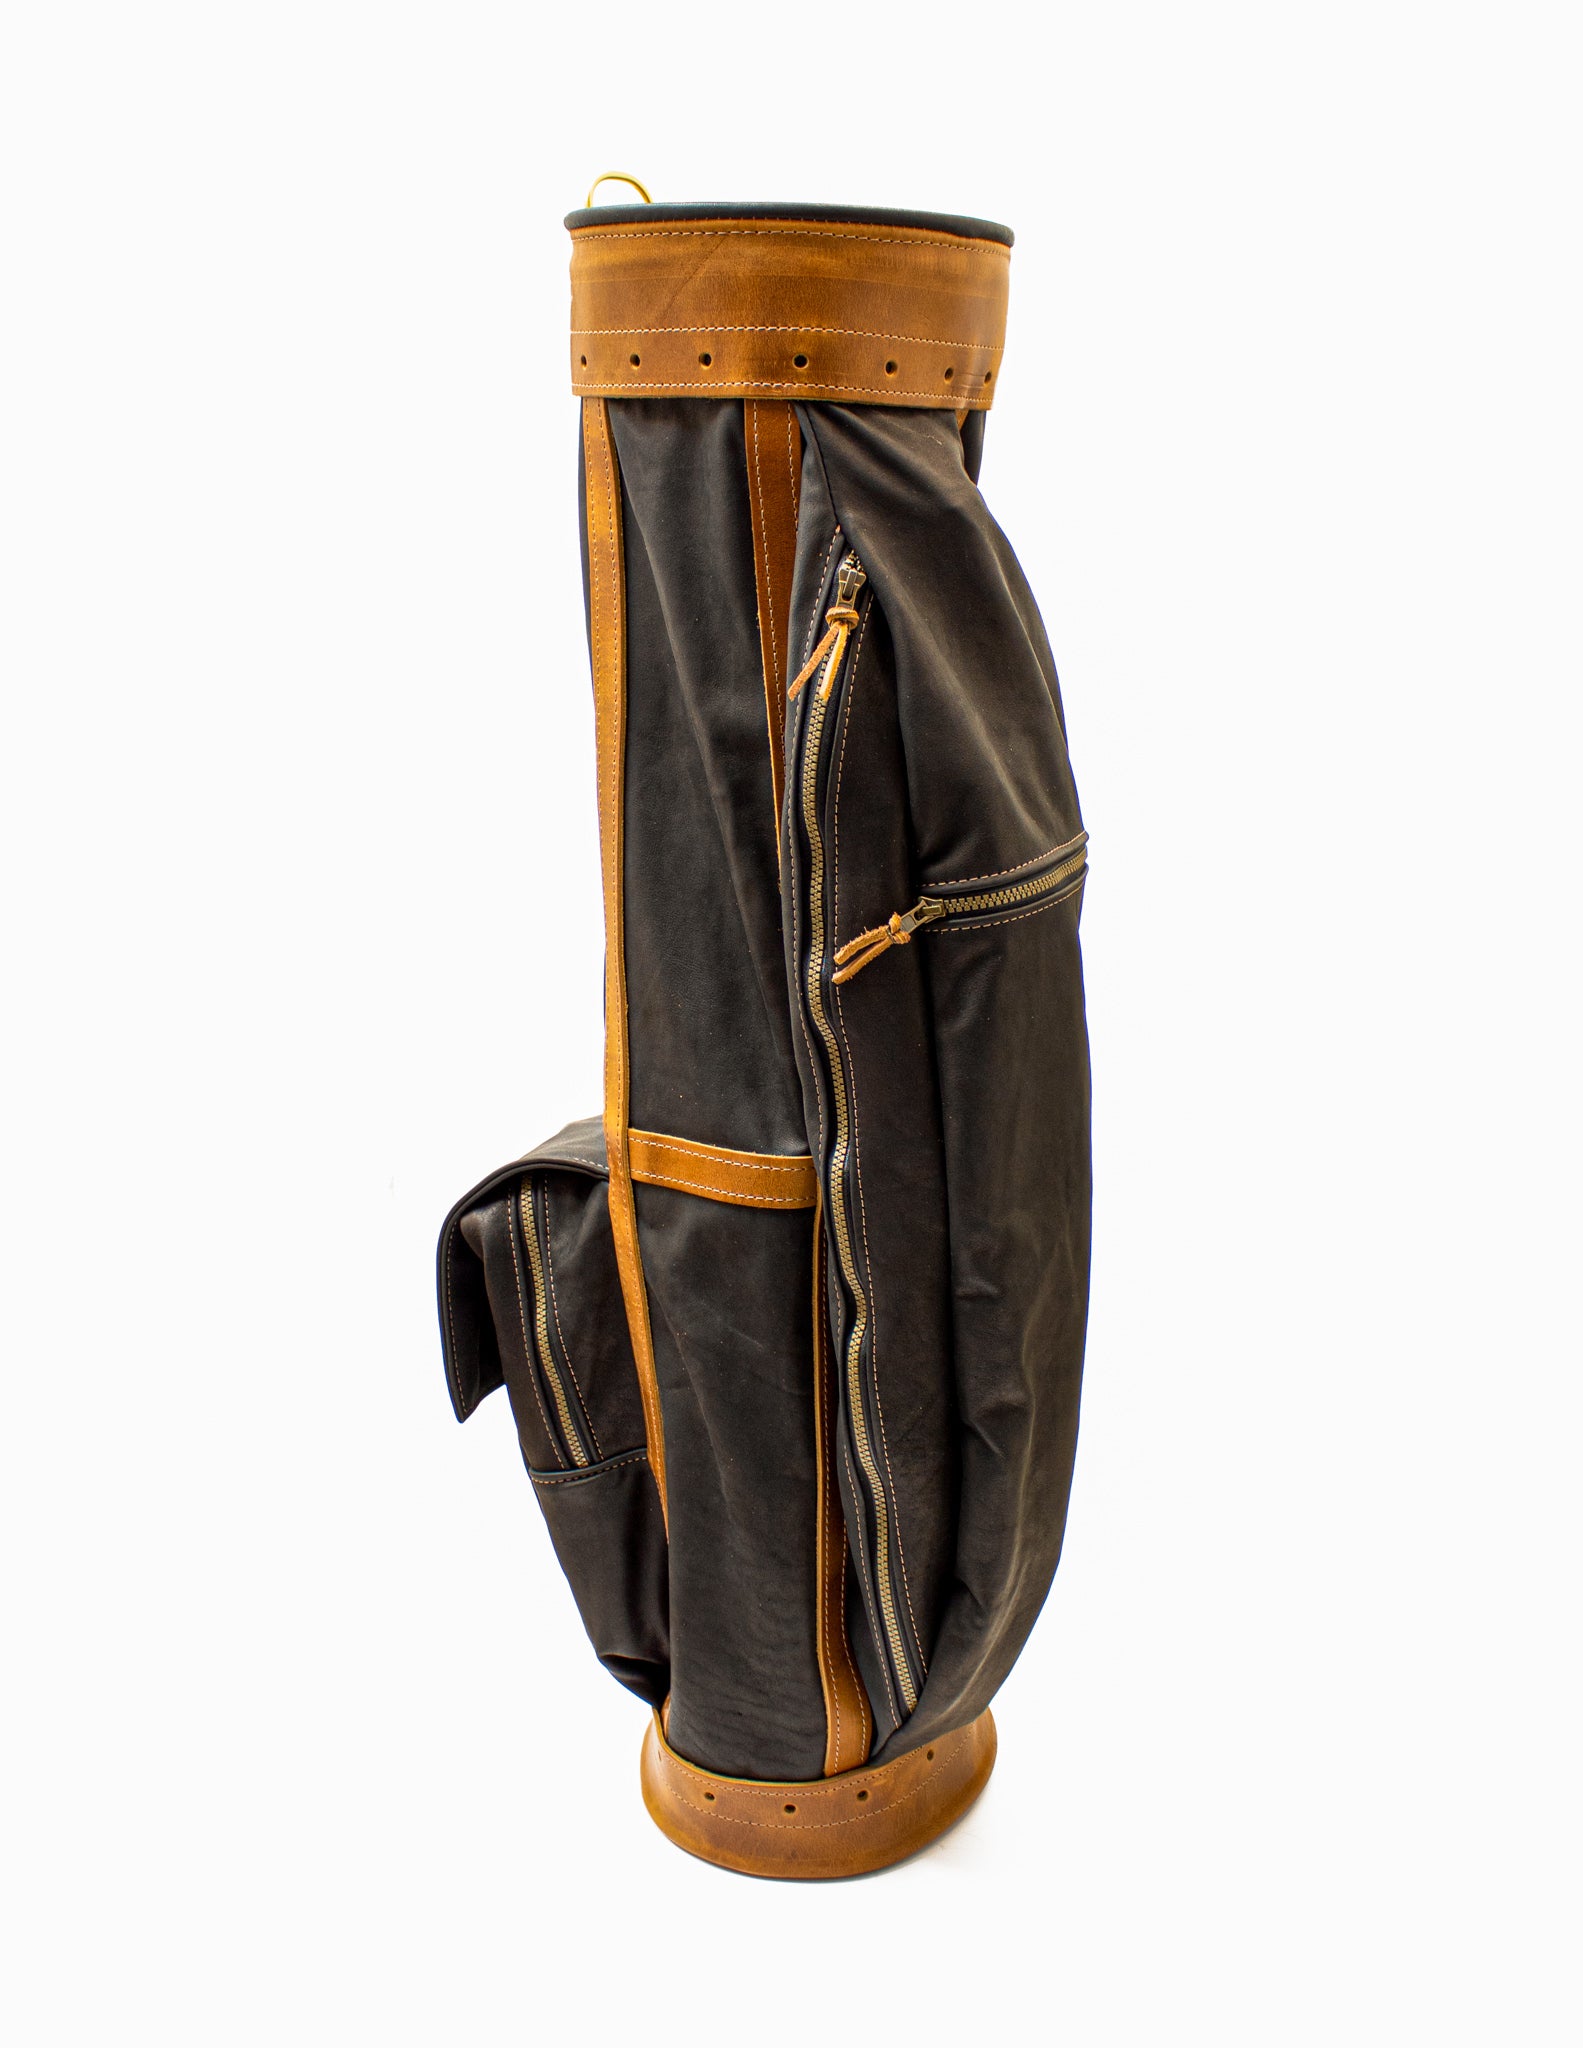 Vintage Tooled Leather Golf Club Bag